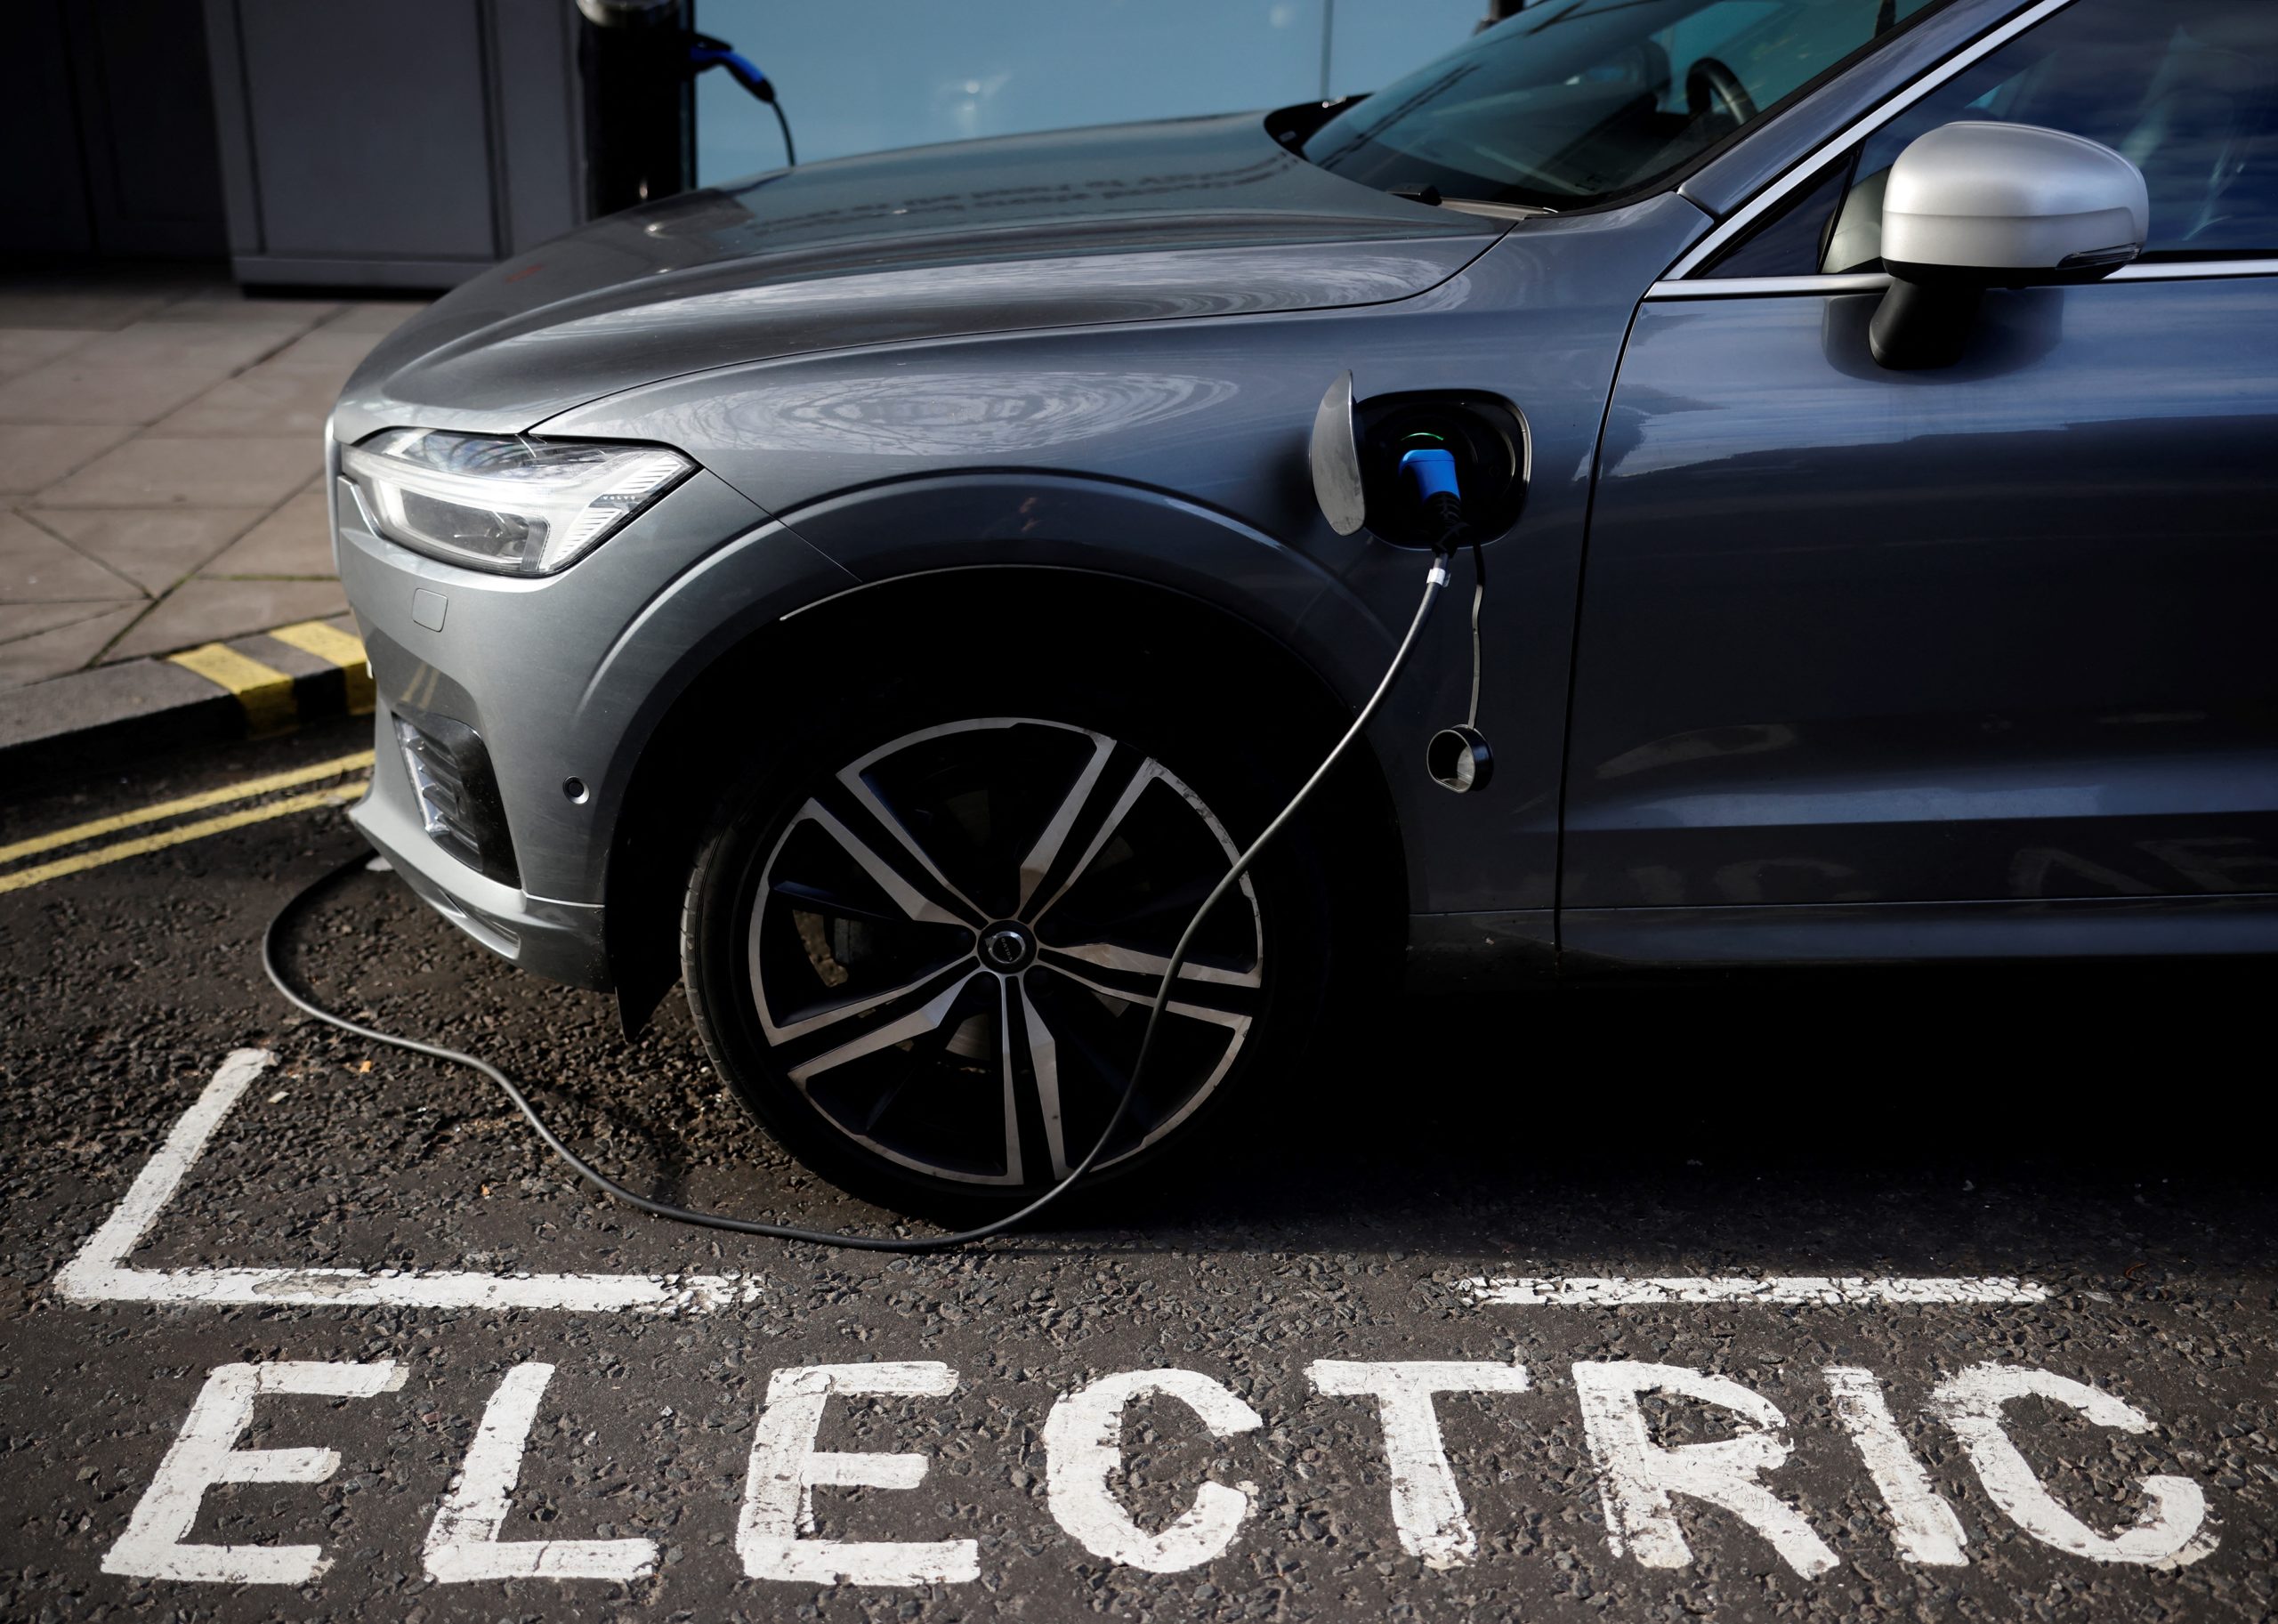 ECA: ‘EU must increase charging infrastructure’